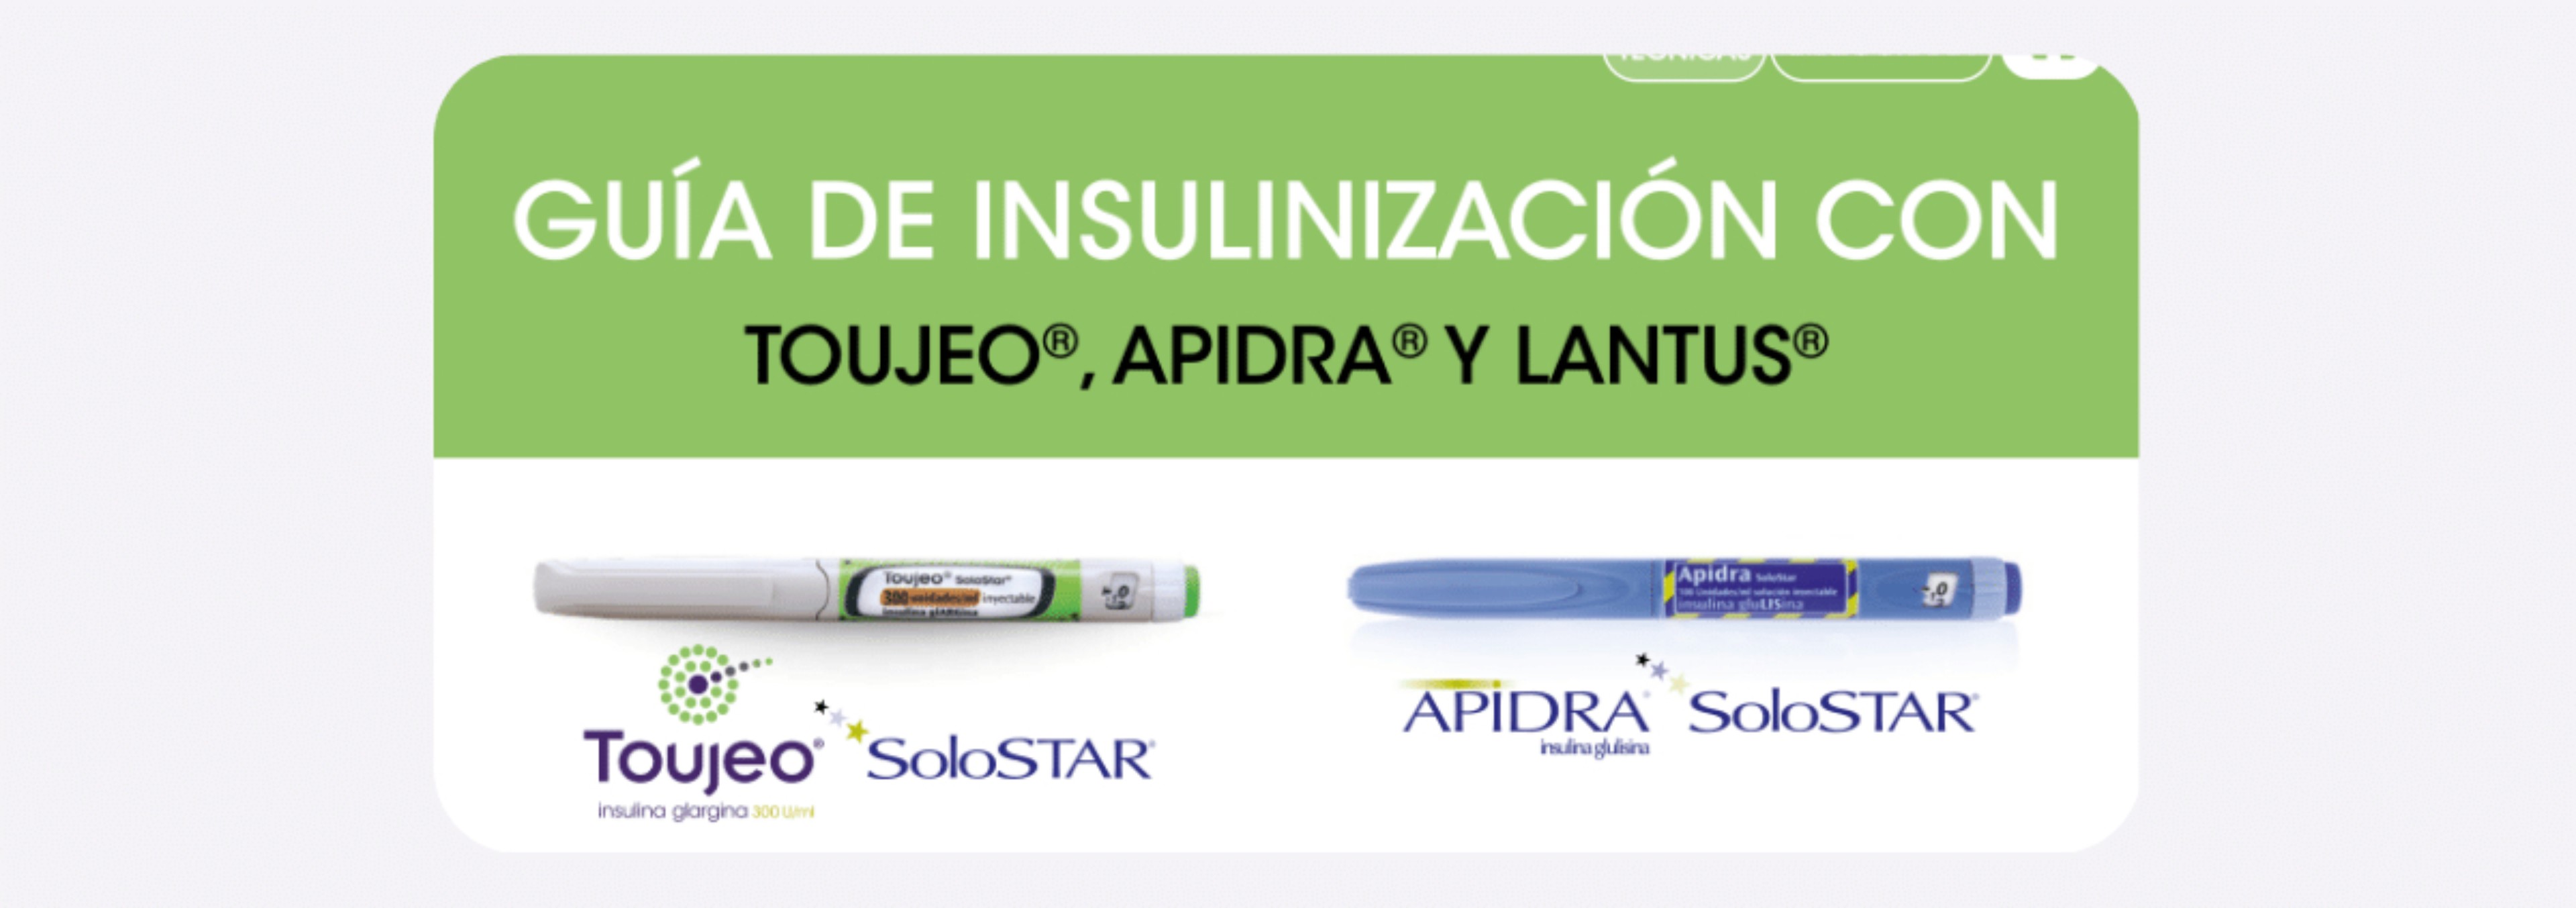 Guía de Insulinización